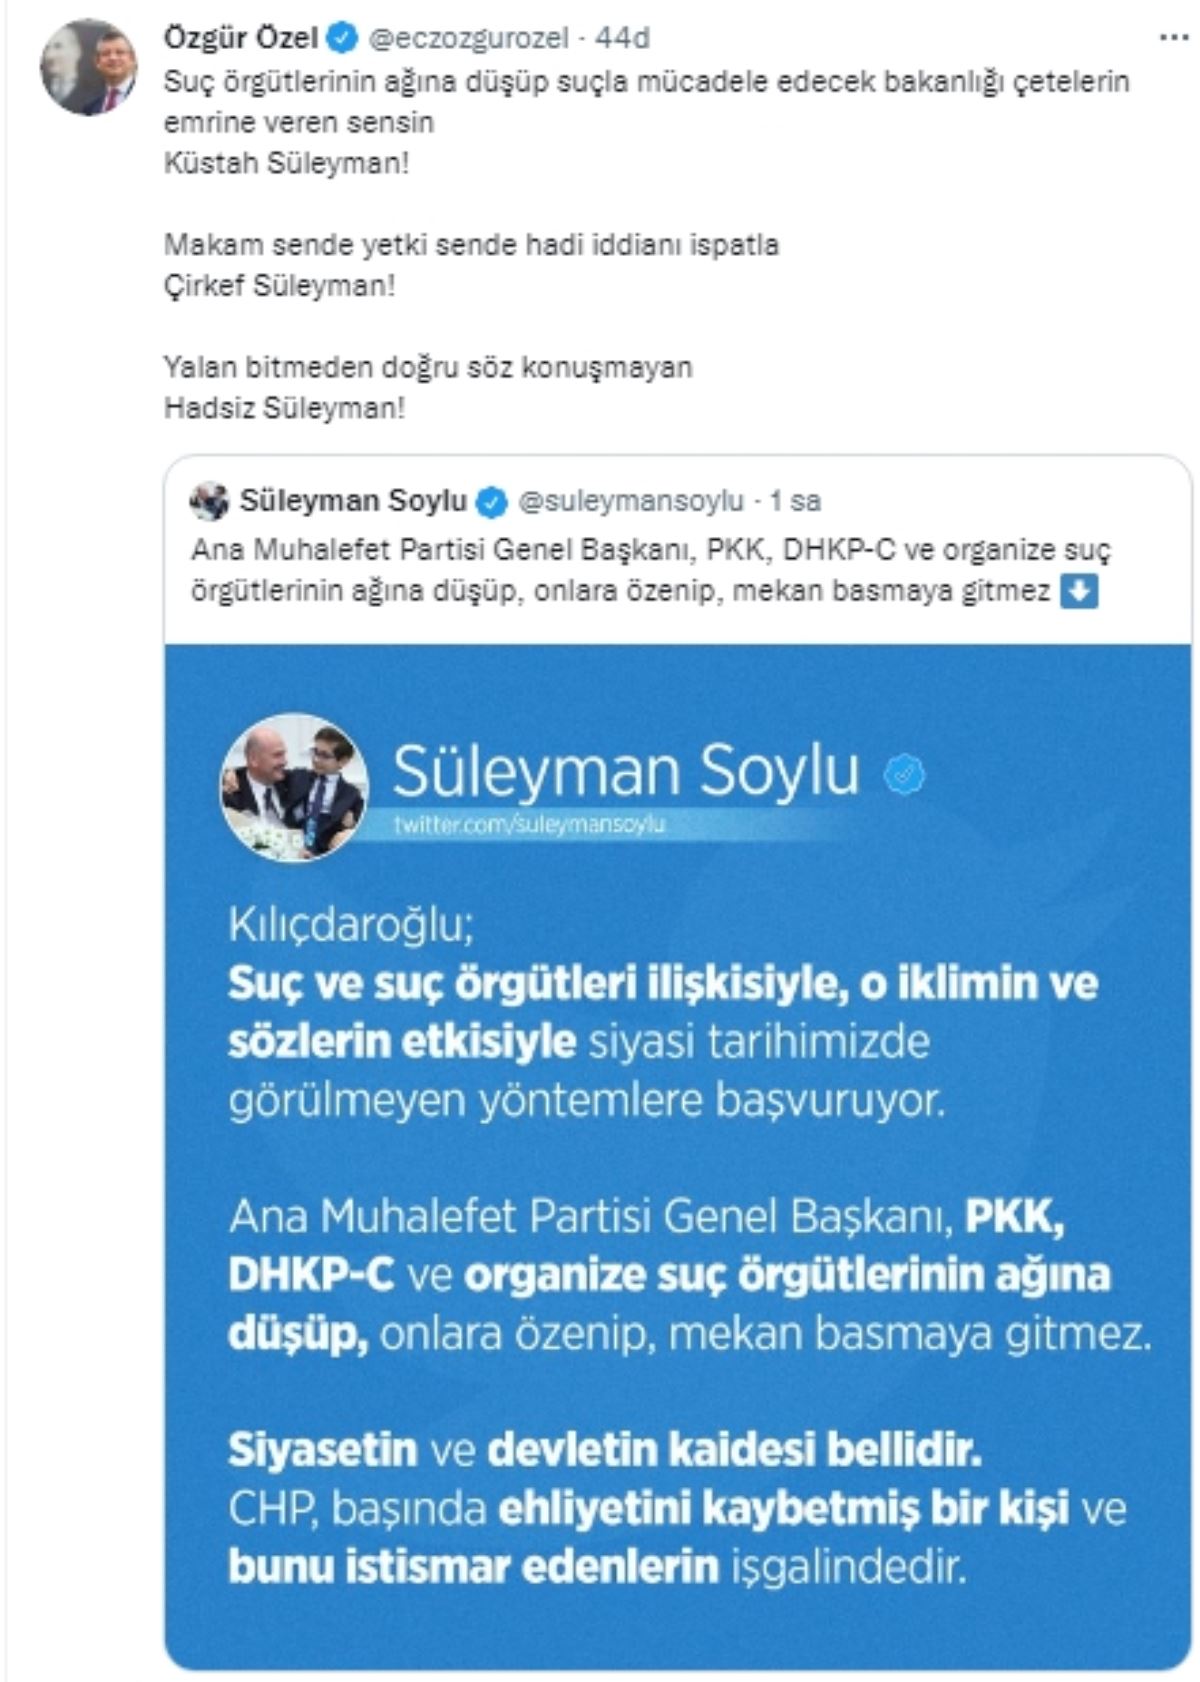 Özel'den Soylu'ya: "Küstah Süleyman!, Çirkef Süleyman!, Hadsiz Süleyman!"